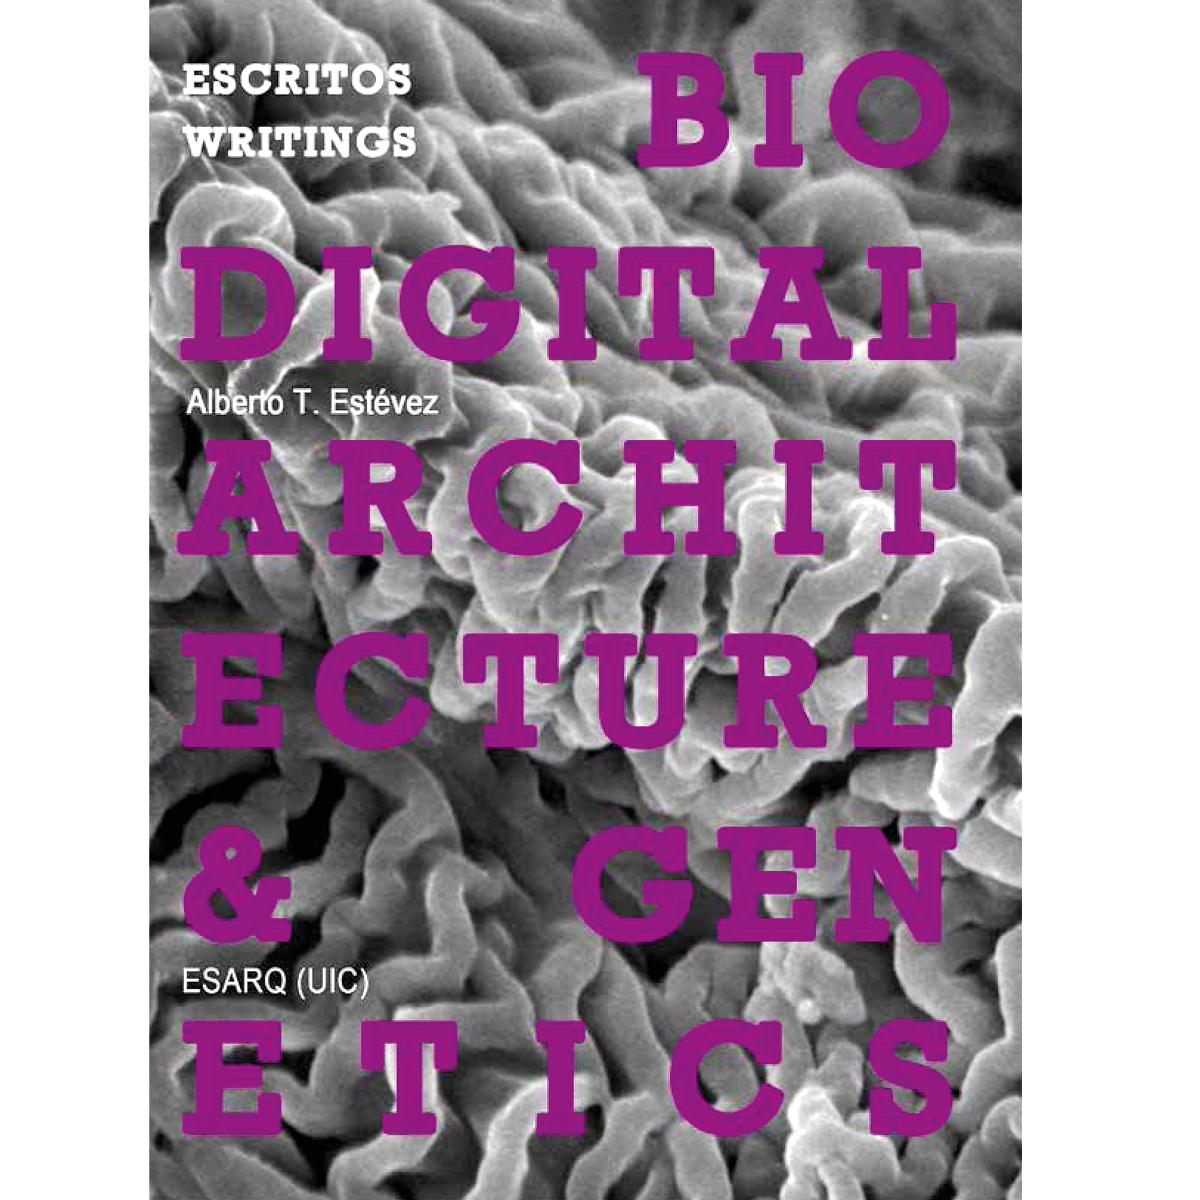 Biodigital Architecture & Genetics